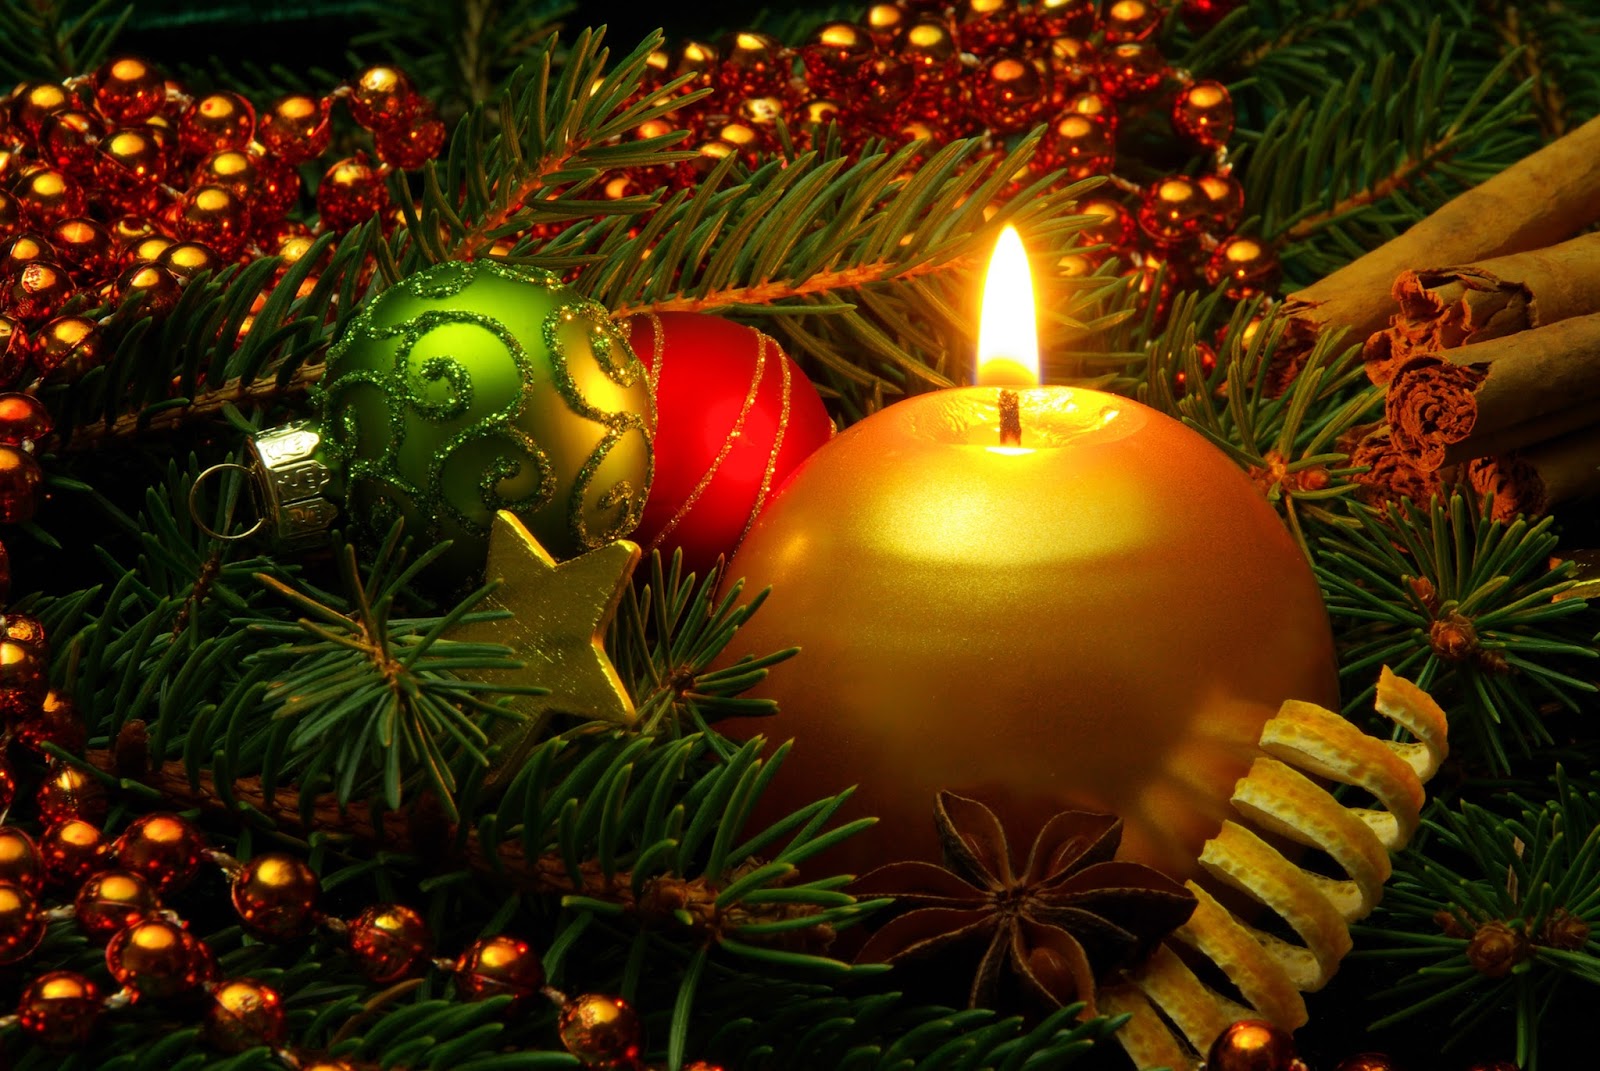 Banco de Imágenes Gratis: 50 Imágenes para Nochebuena y Navidad  (Recopilación Especial)